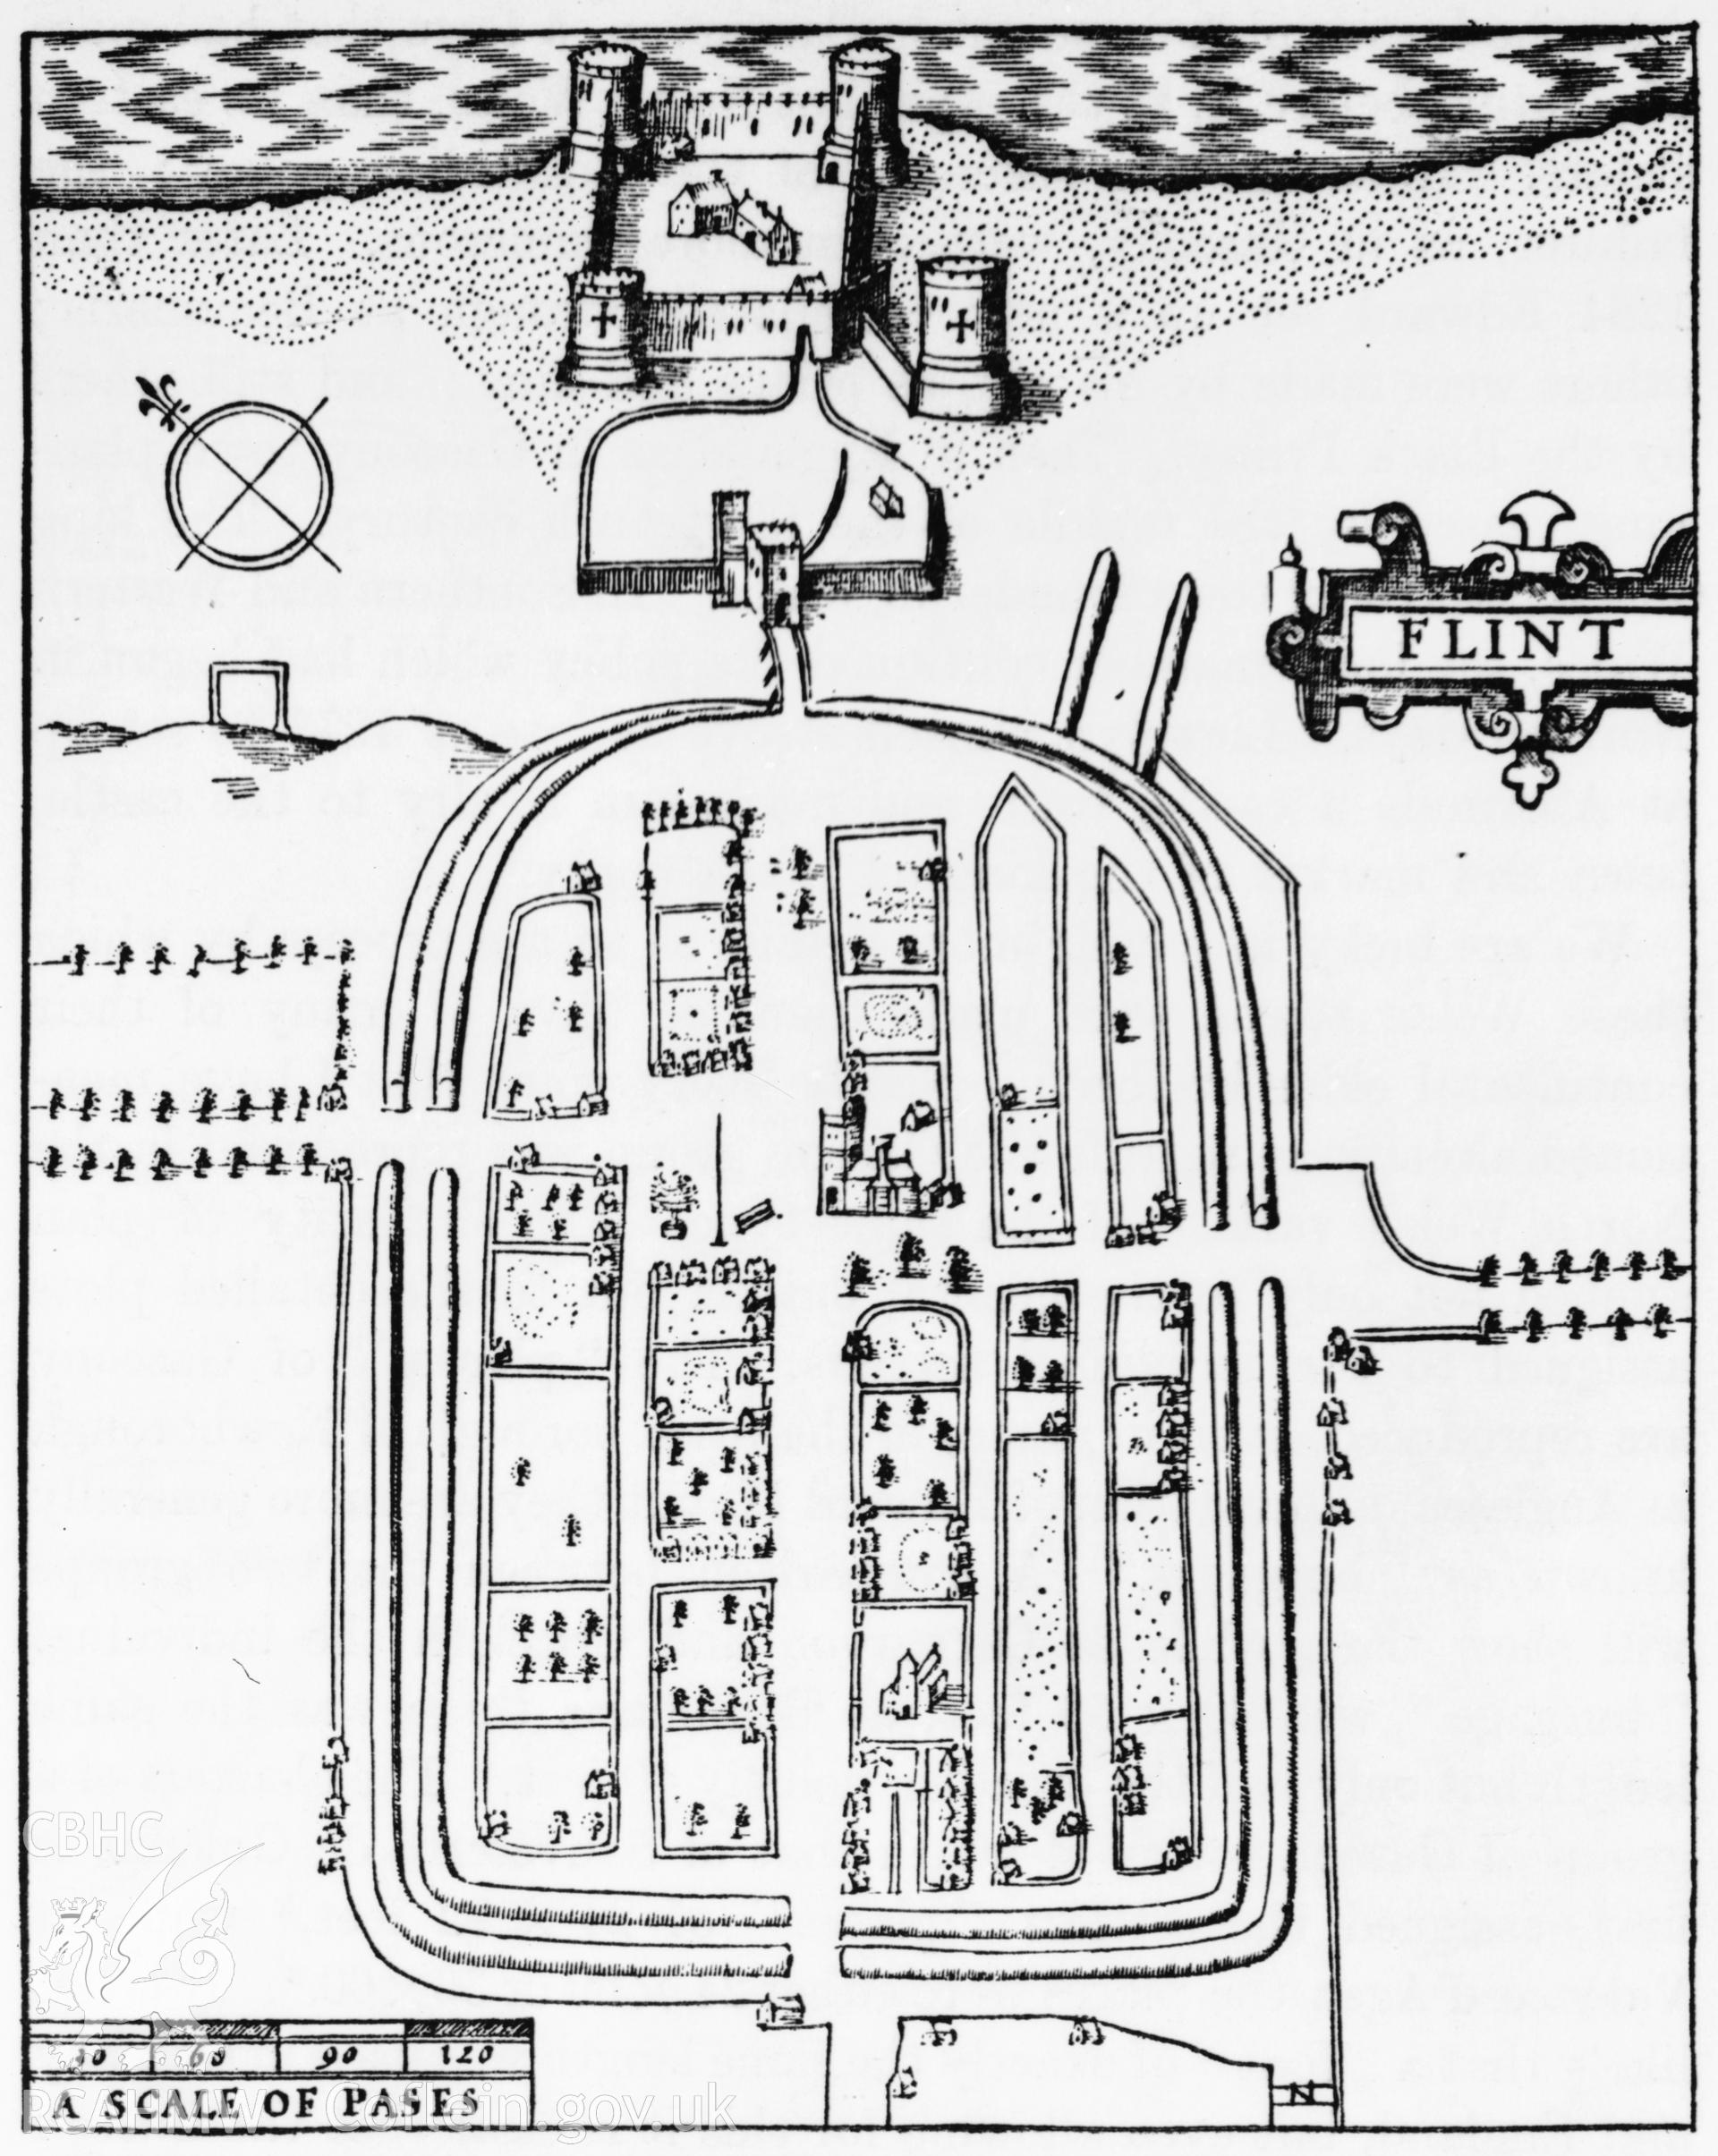 D.O.E drawing of Flint Castle.